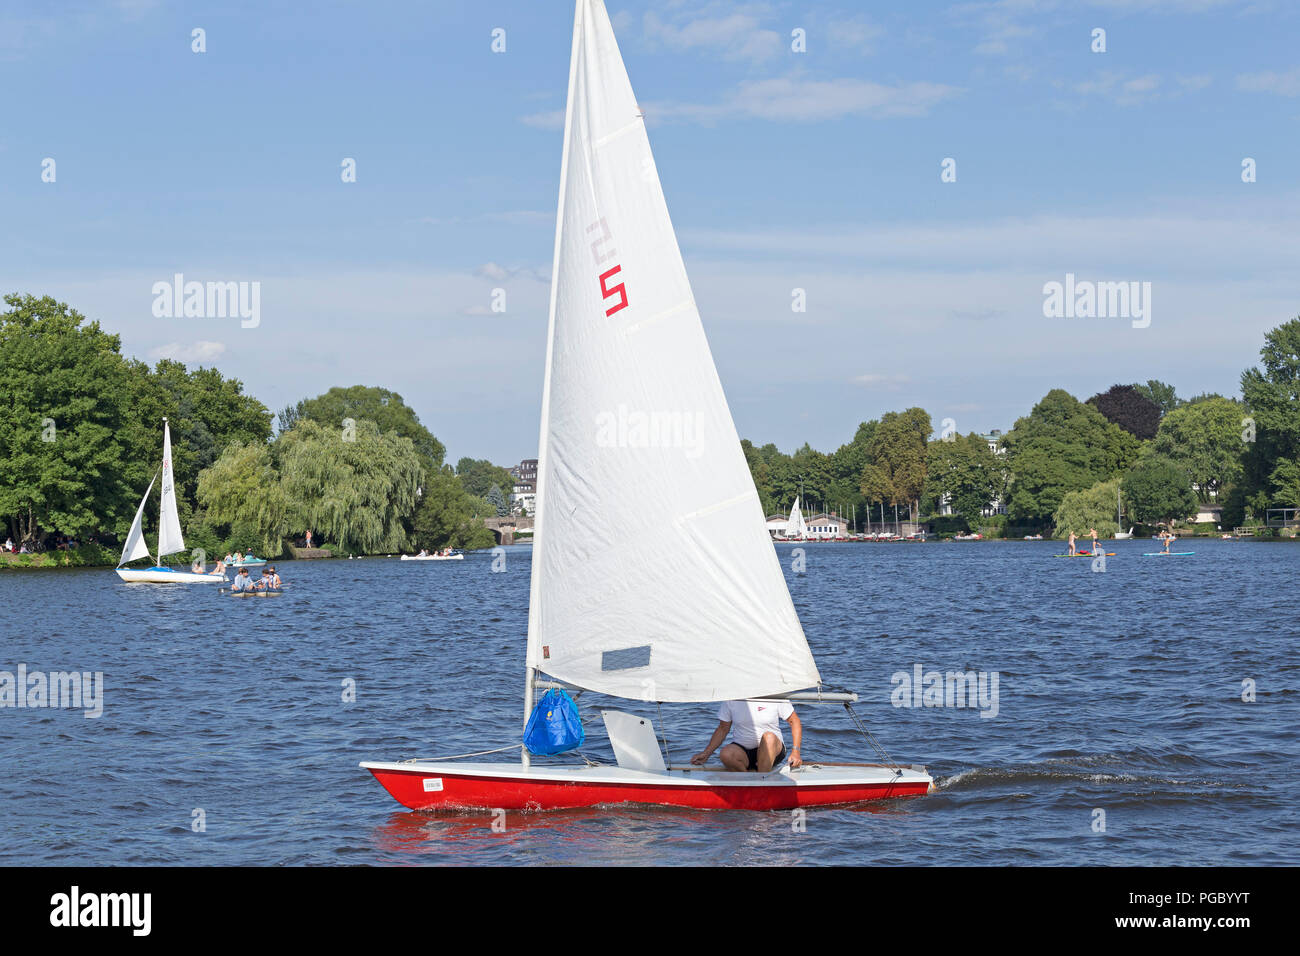 Bote de vela, el lago Außenalster (Alster exterior), Hamburgo, Alemania. Foto de stock